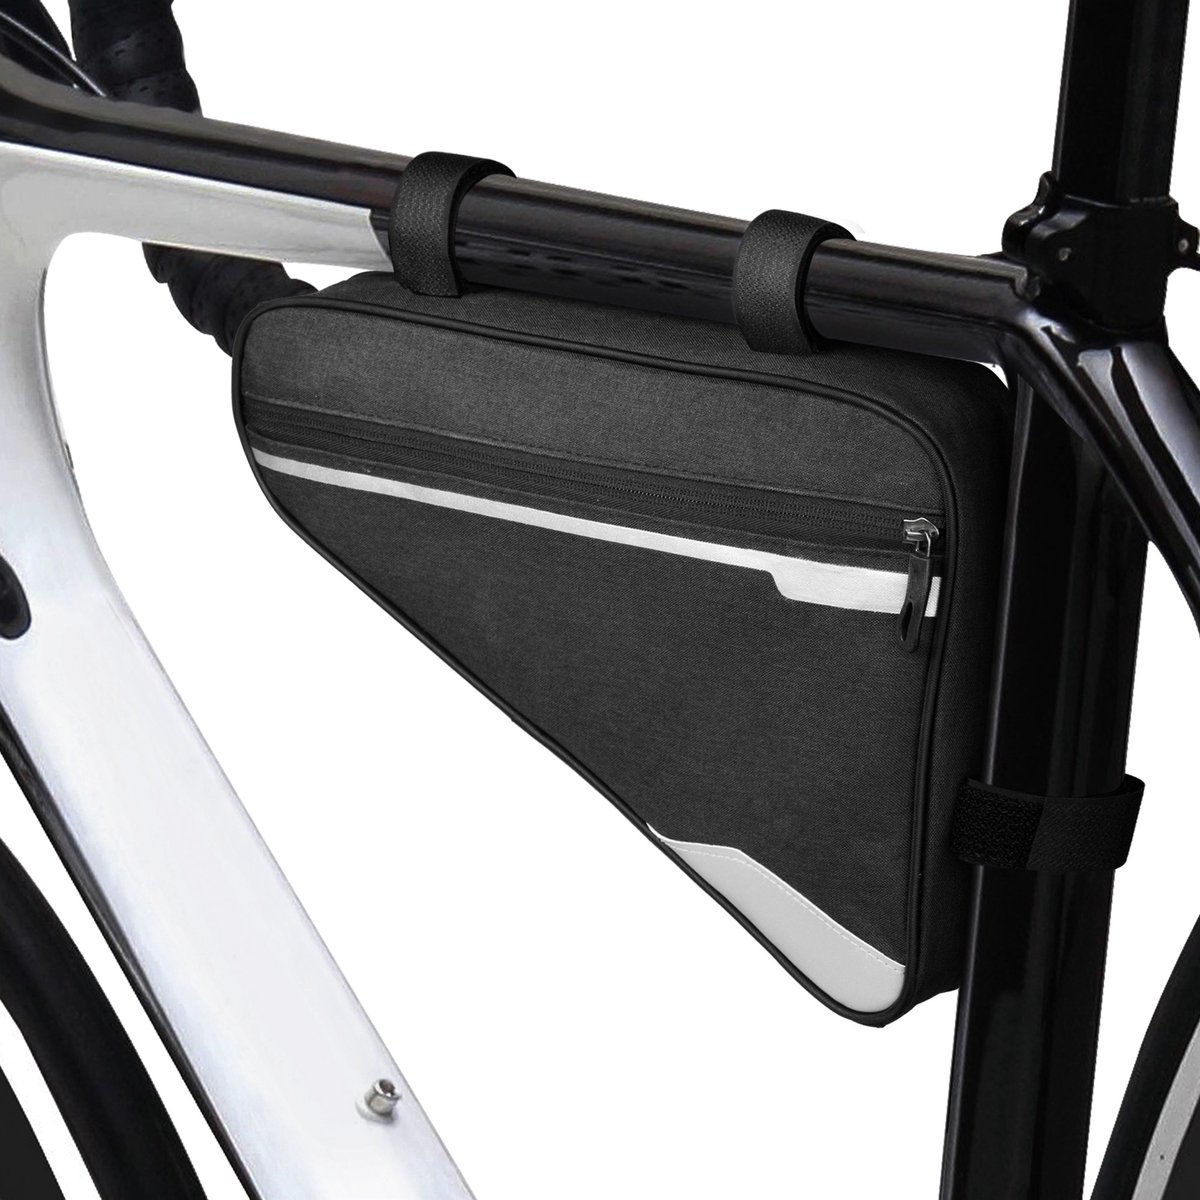 kwmobile frametas fiets met reflectoren - 30 x 29 x 20 cm - Frame fietstas met klittenband - In zwart